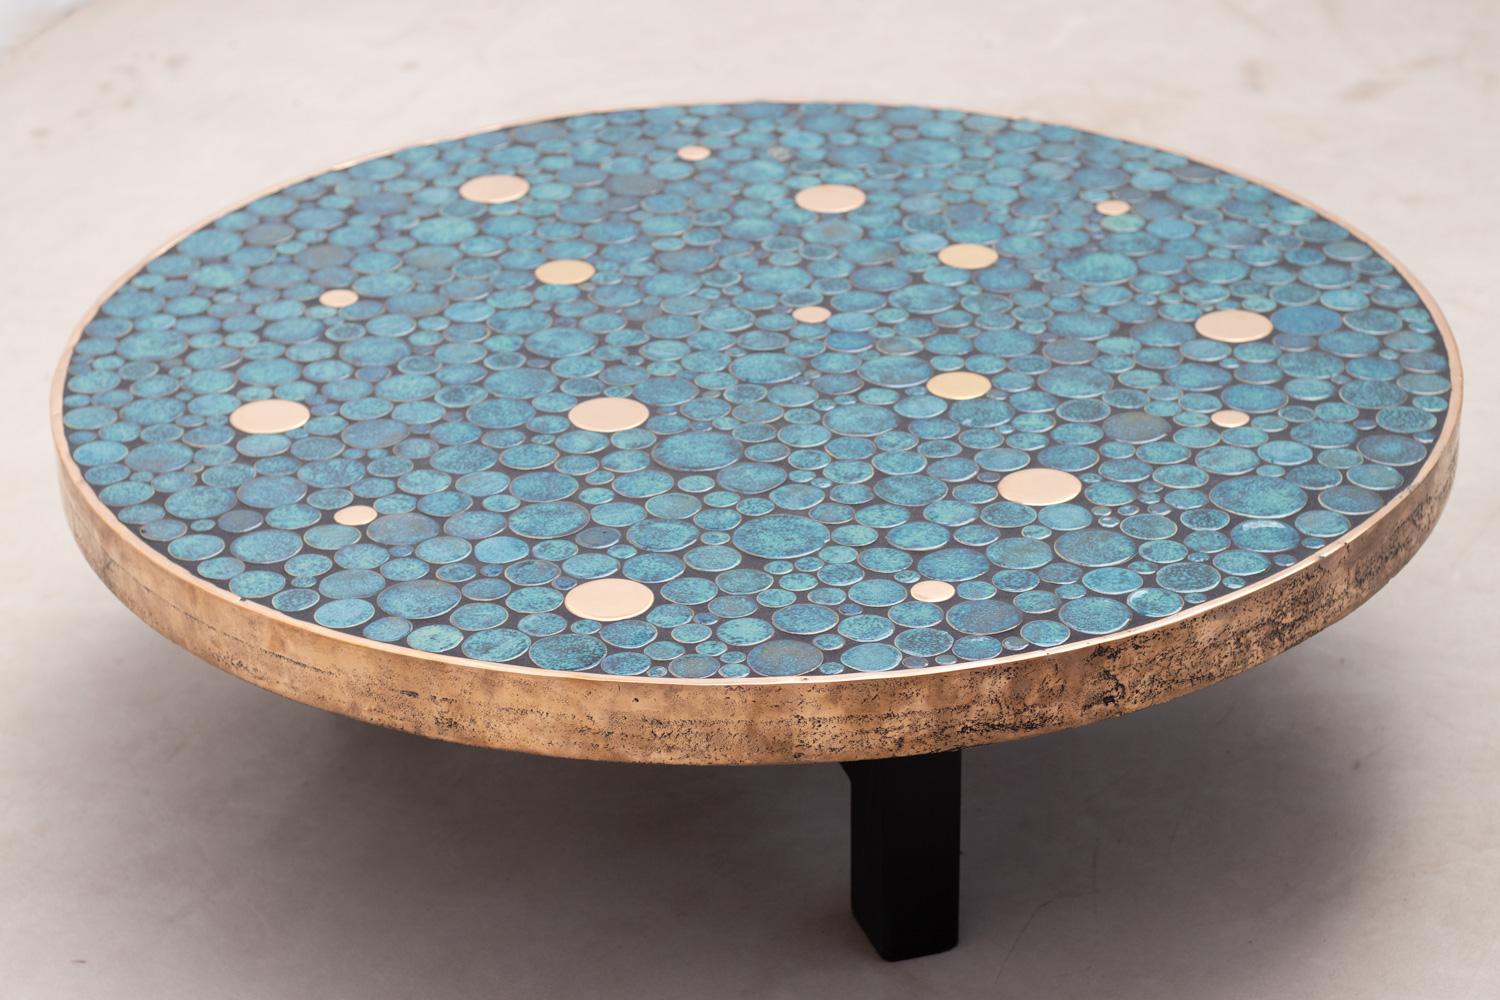 Zeitgenössischer Couchtisch der belgischen Künstlerin ALIETTE VLIERS.
Dieser Tisch besteht aus einem Tablett mit vielen einzigartigen Keramikkreisen in verschiedenen Größen und bietet eine Reihe von Blautönen in Kombination mit Messingkreisen.